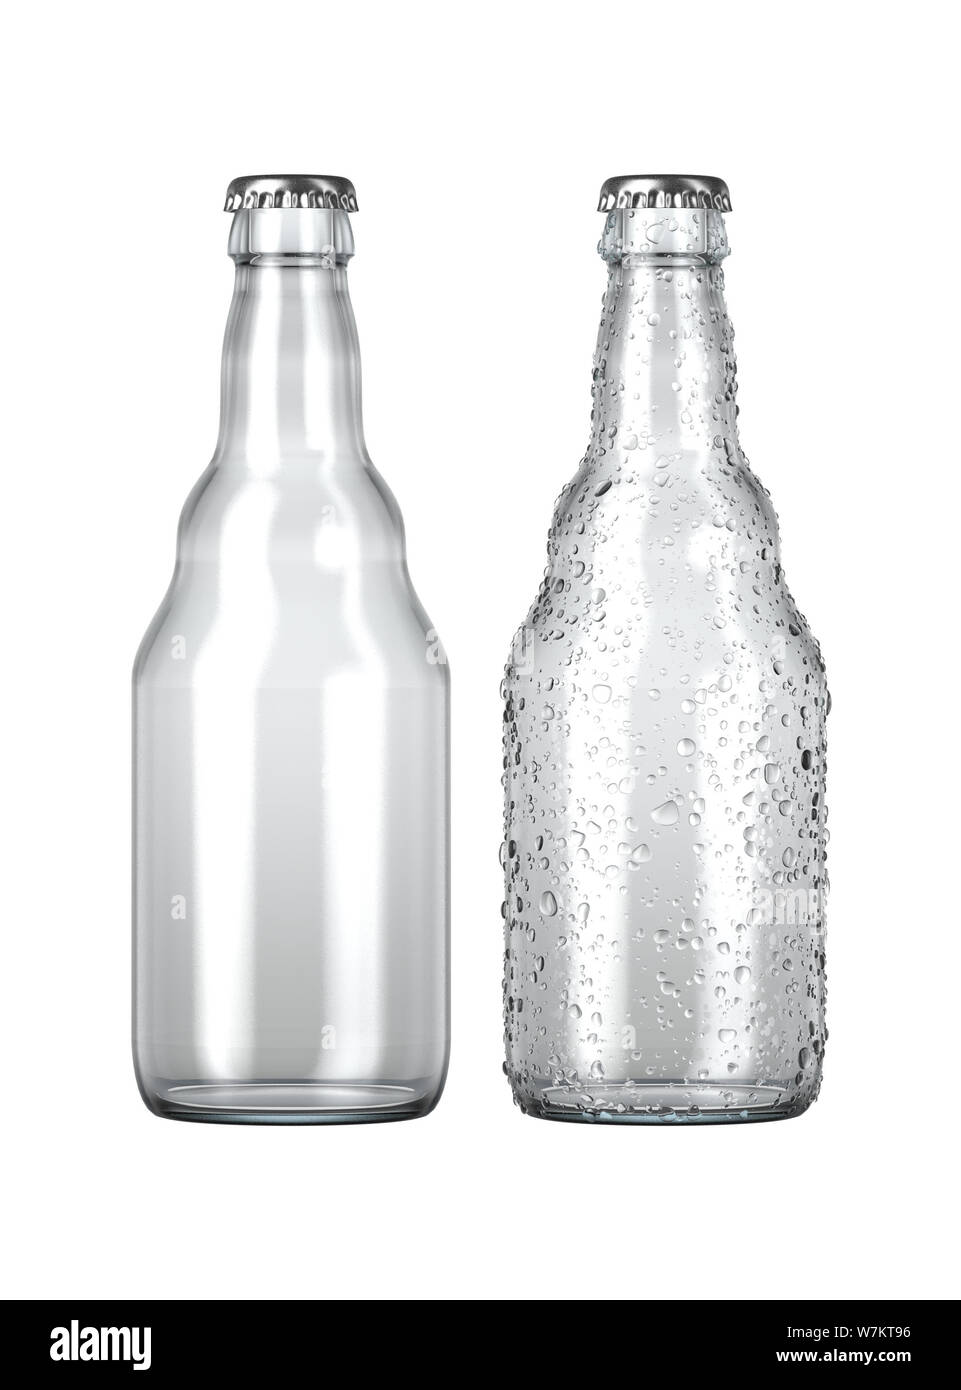 Ein einfaches klares Glas Bier Flasche neben einem anderen mit Tröpfchen von Kondensation auf einer isolierten weißen studio Hintergrund - 3D-Rendering Stockfoto